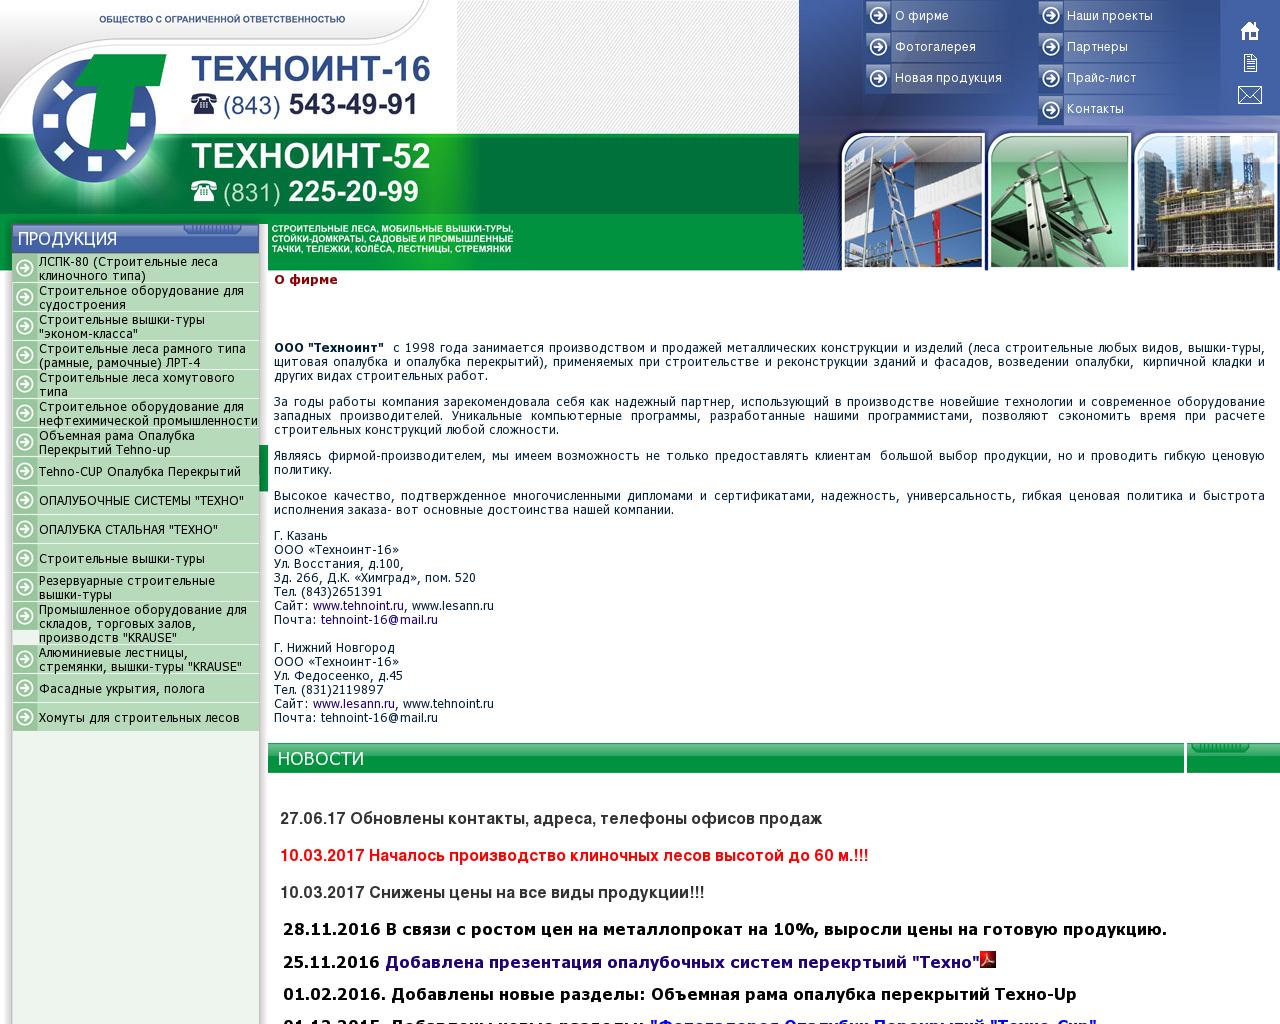 Изображение сайта tehnoint.ru в разрешении 1280x1024